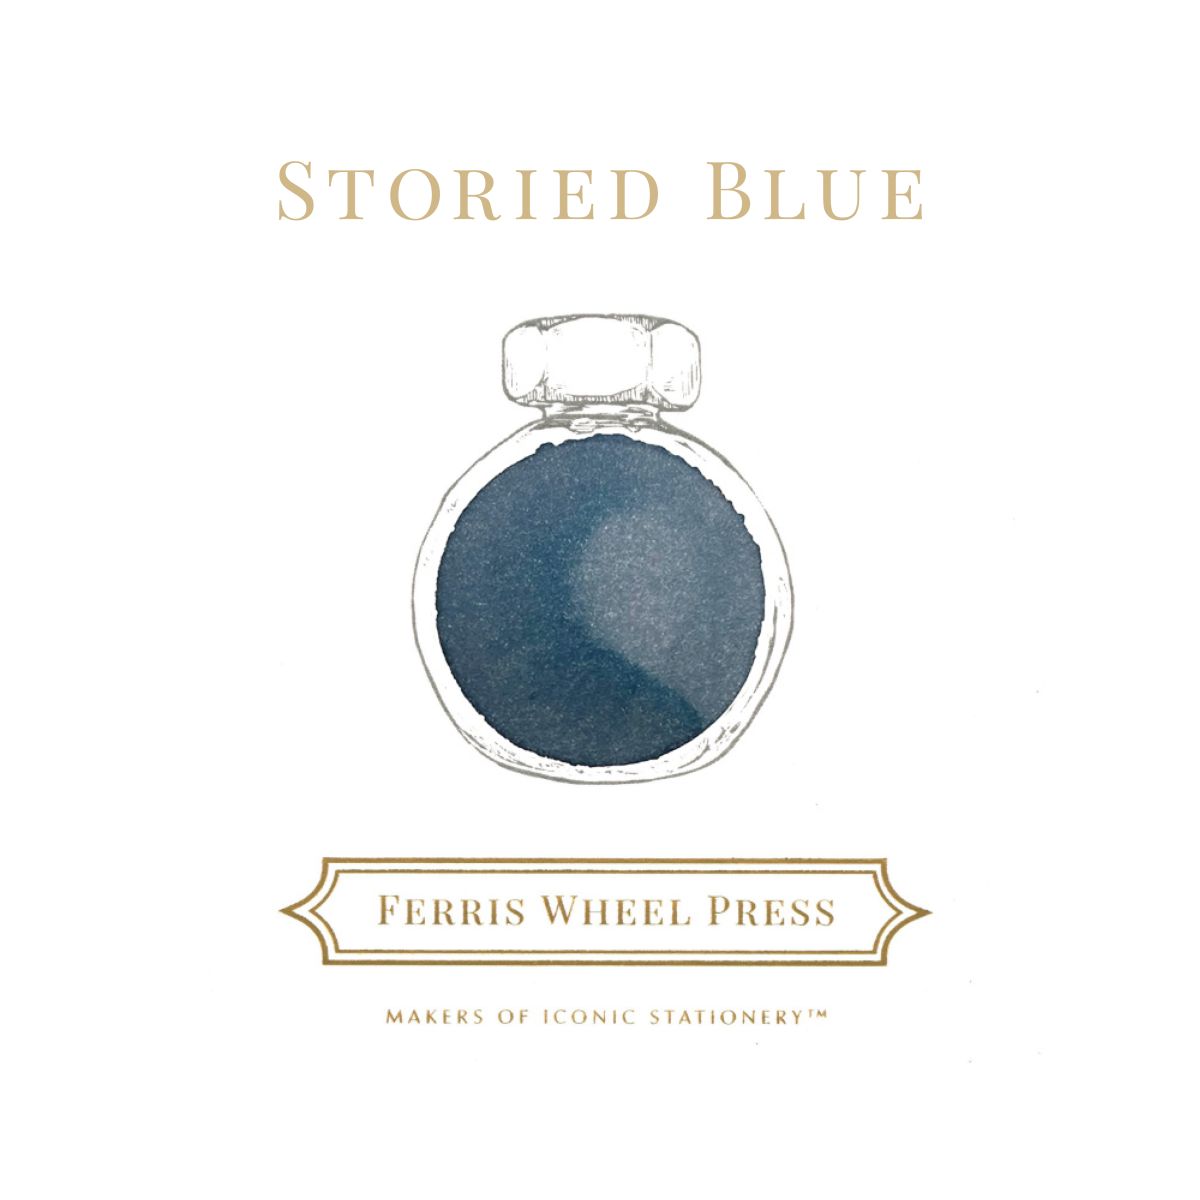 Storied Blue by Ferris Wheel Swatch in einem gezeichneten Tintenglas. 